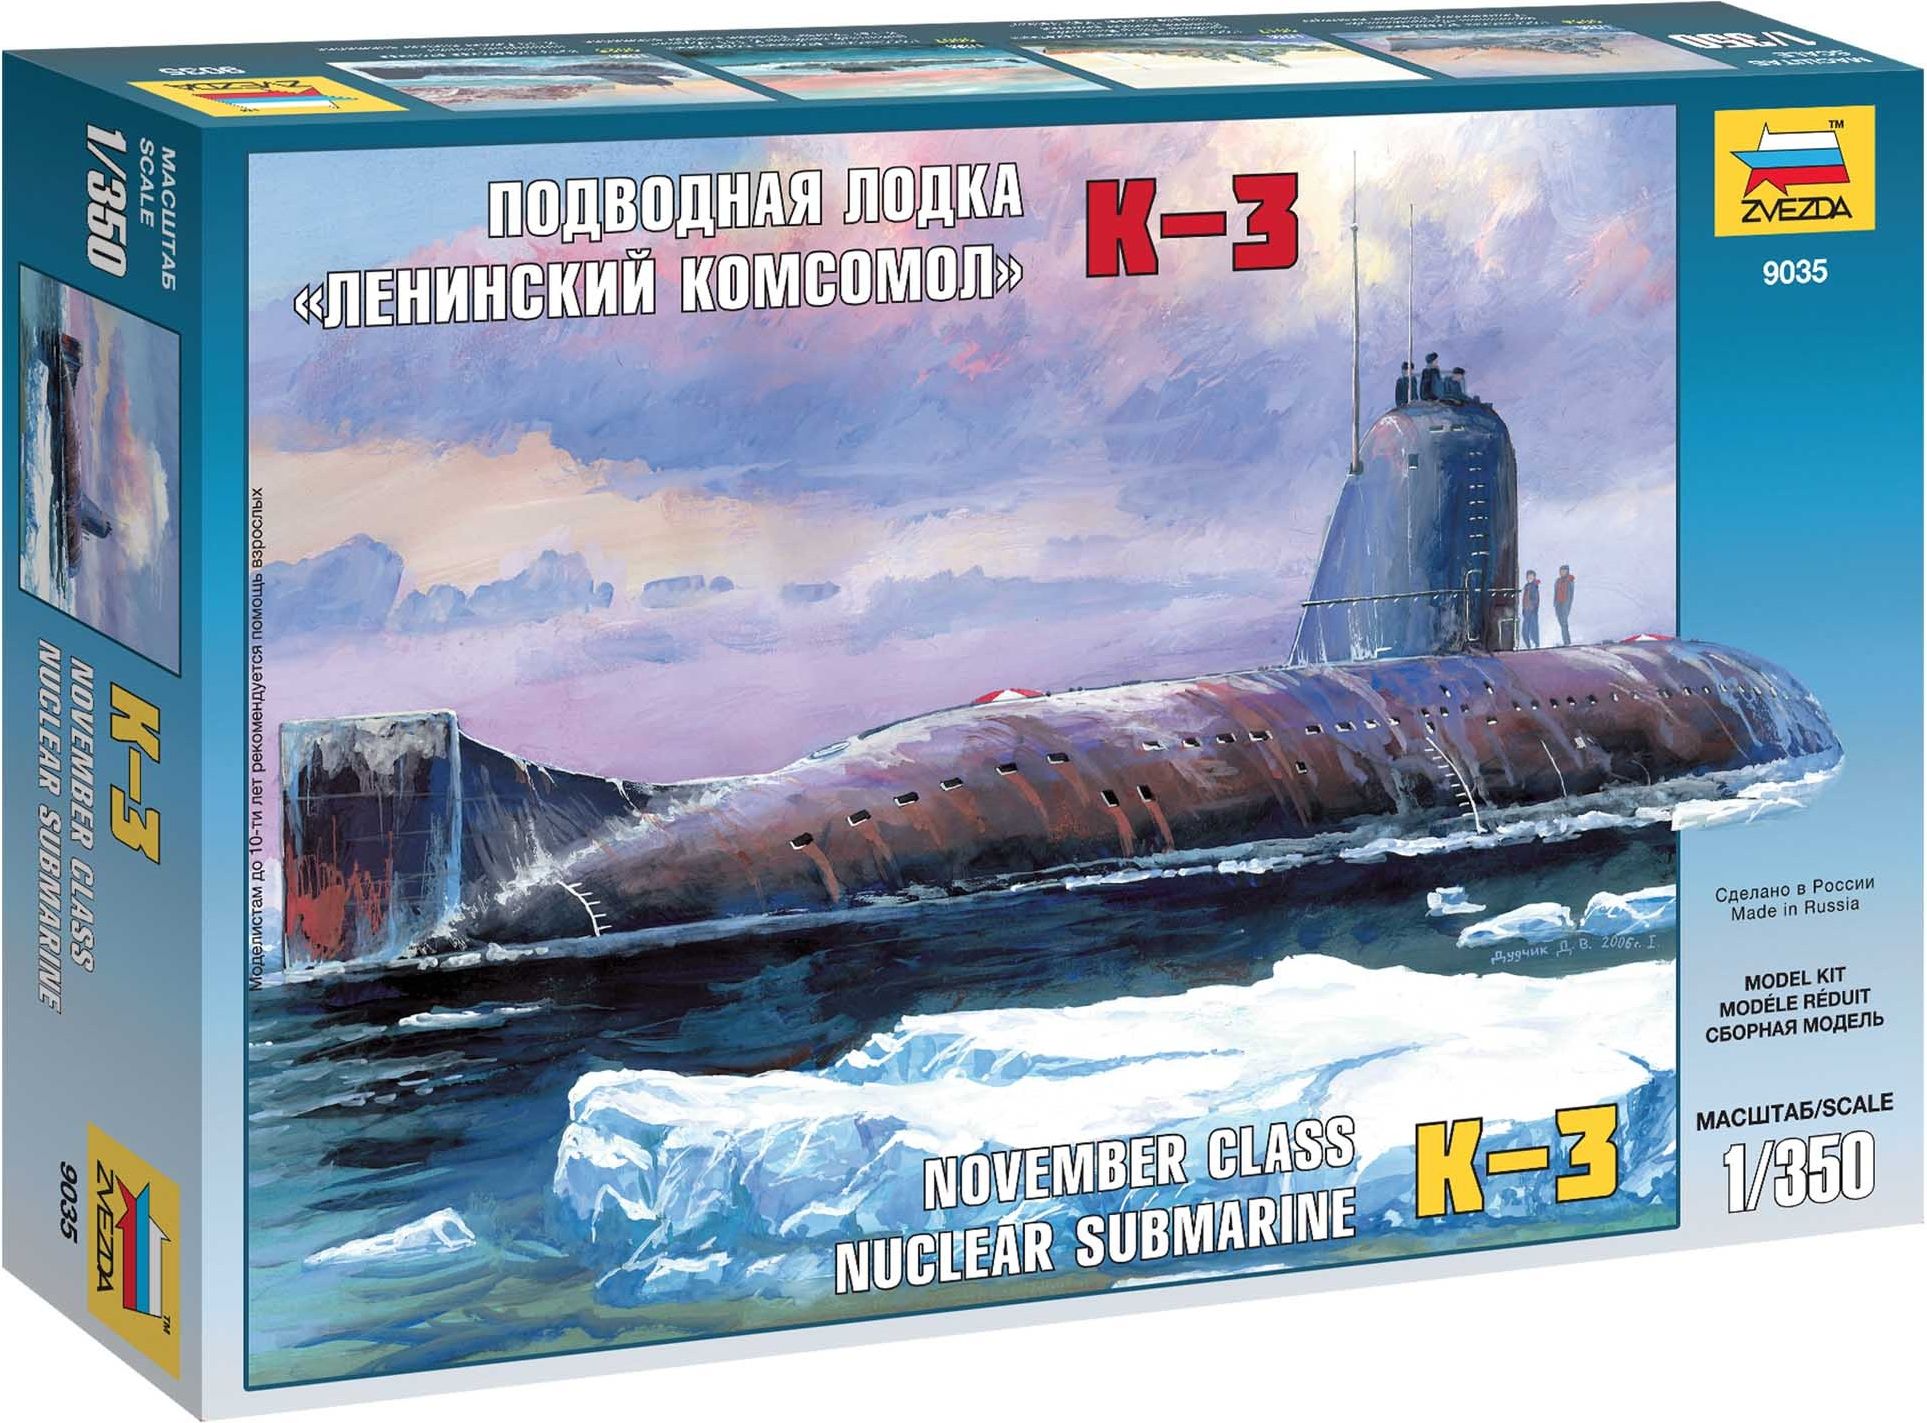 Nuclear Submarine K-3 (1:350) - obrázek 1